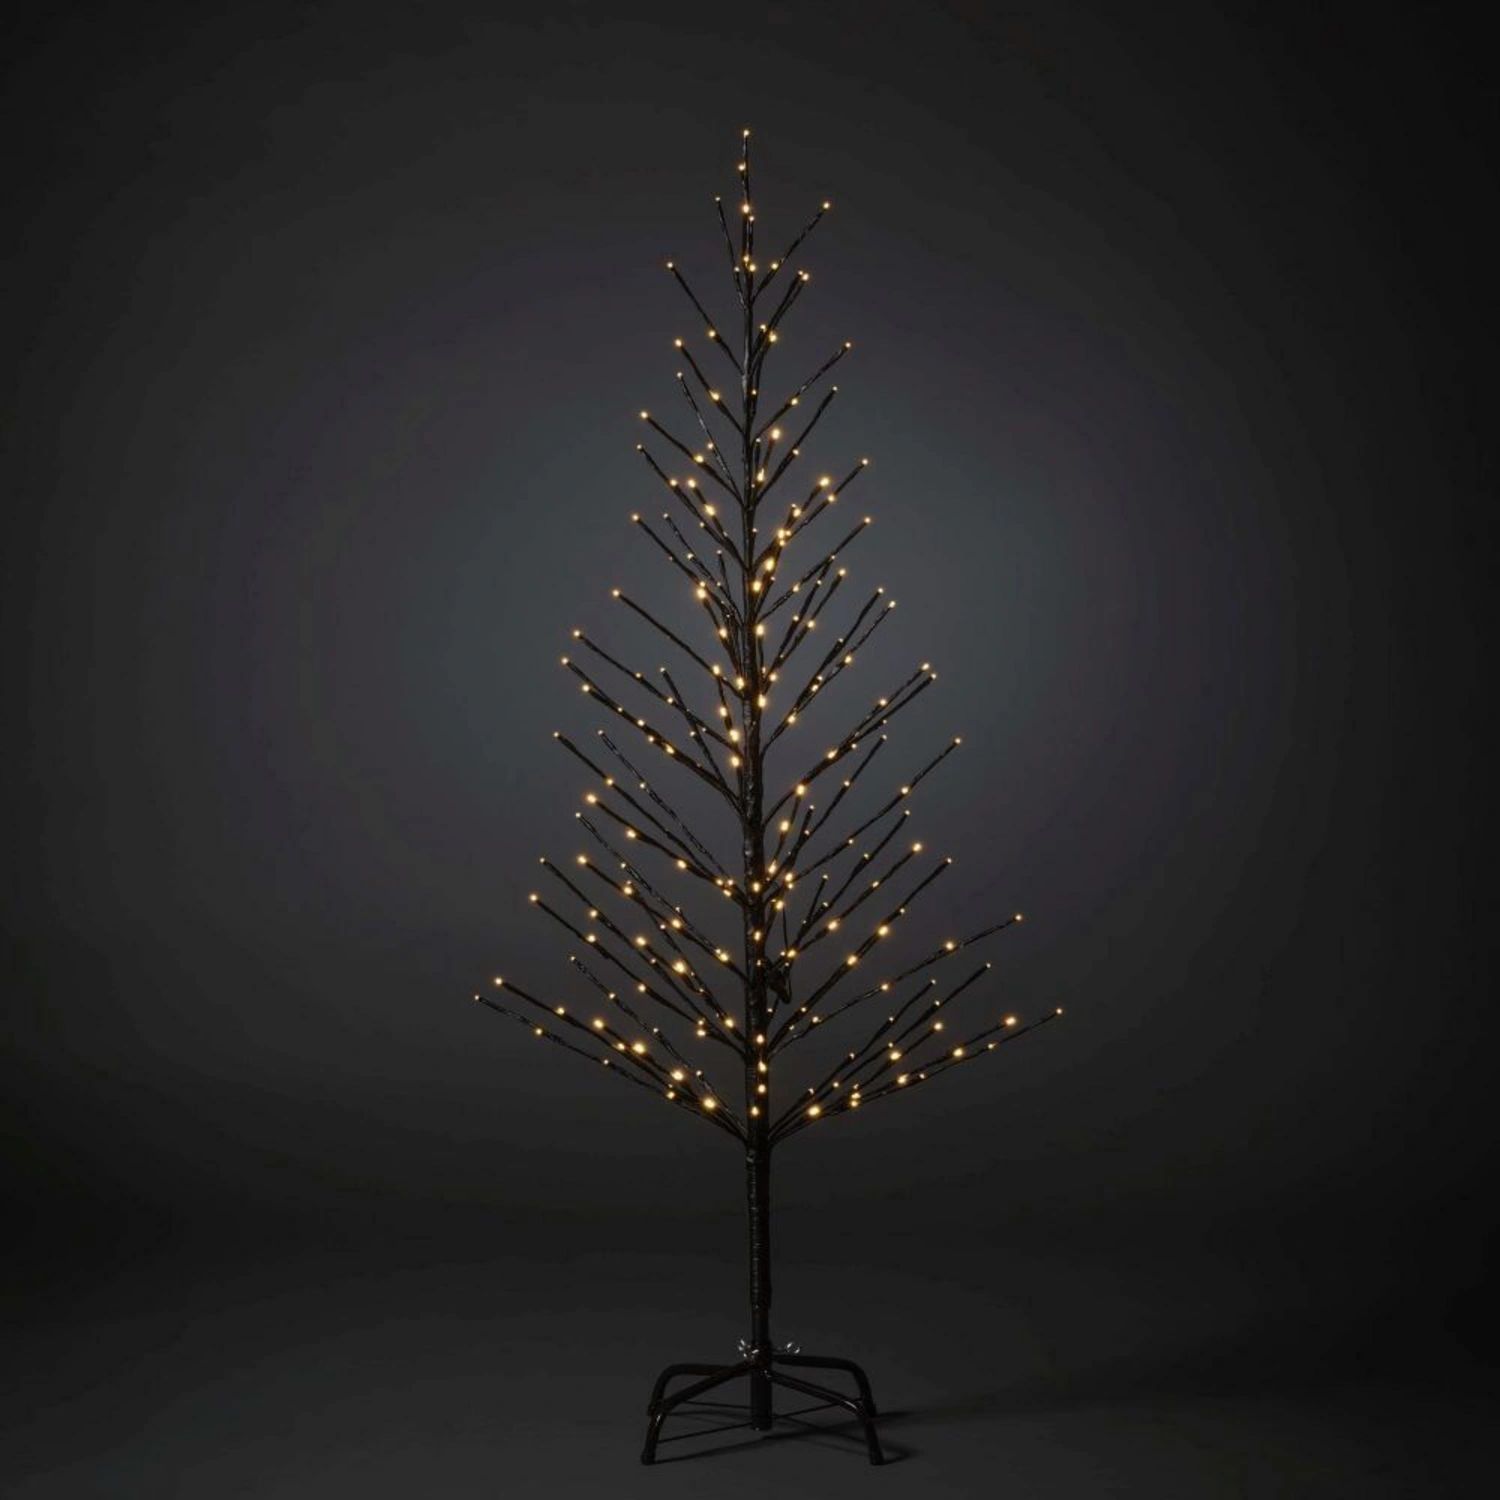 Konstsmide LED-Lichterbaum, kunststoff/metall, Höhe: 150 cm, inkl